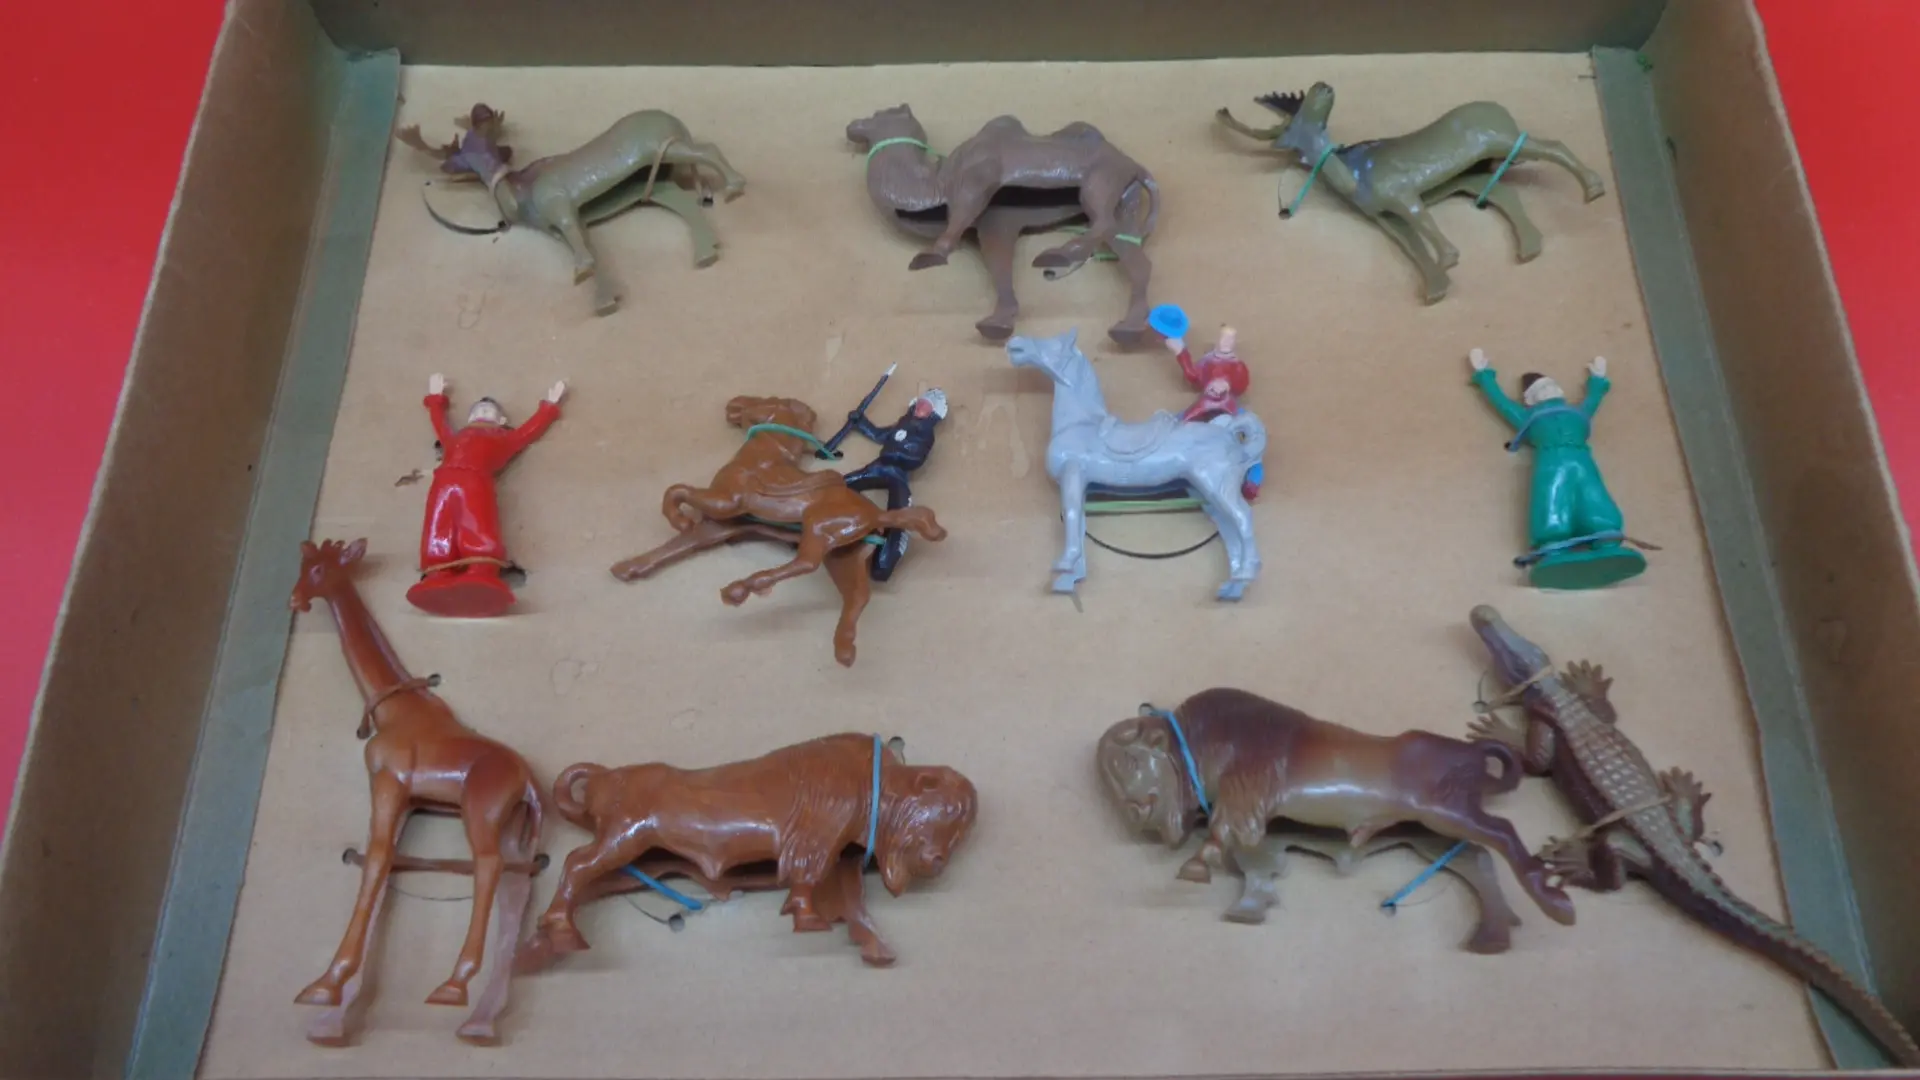 Safari animal figurines